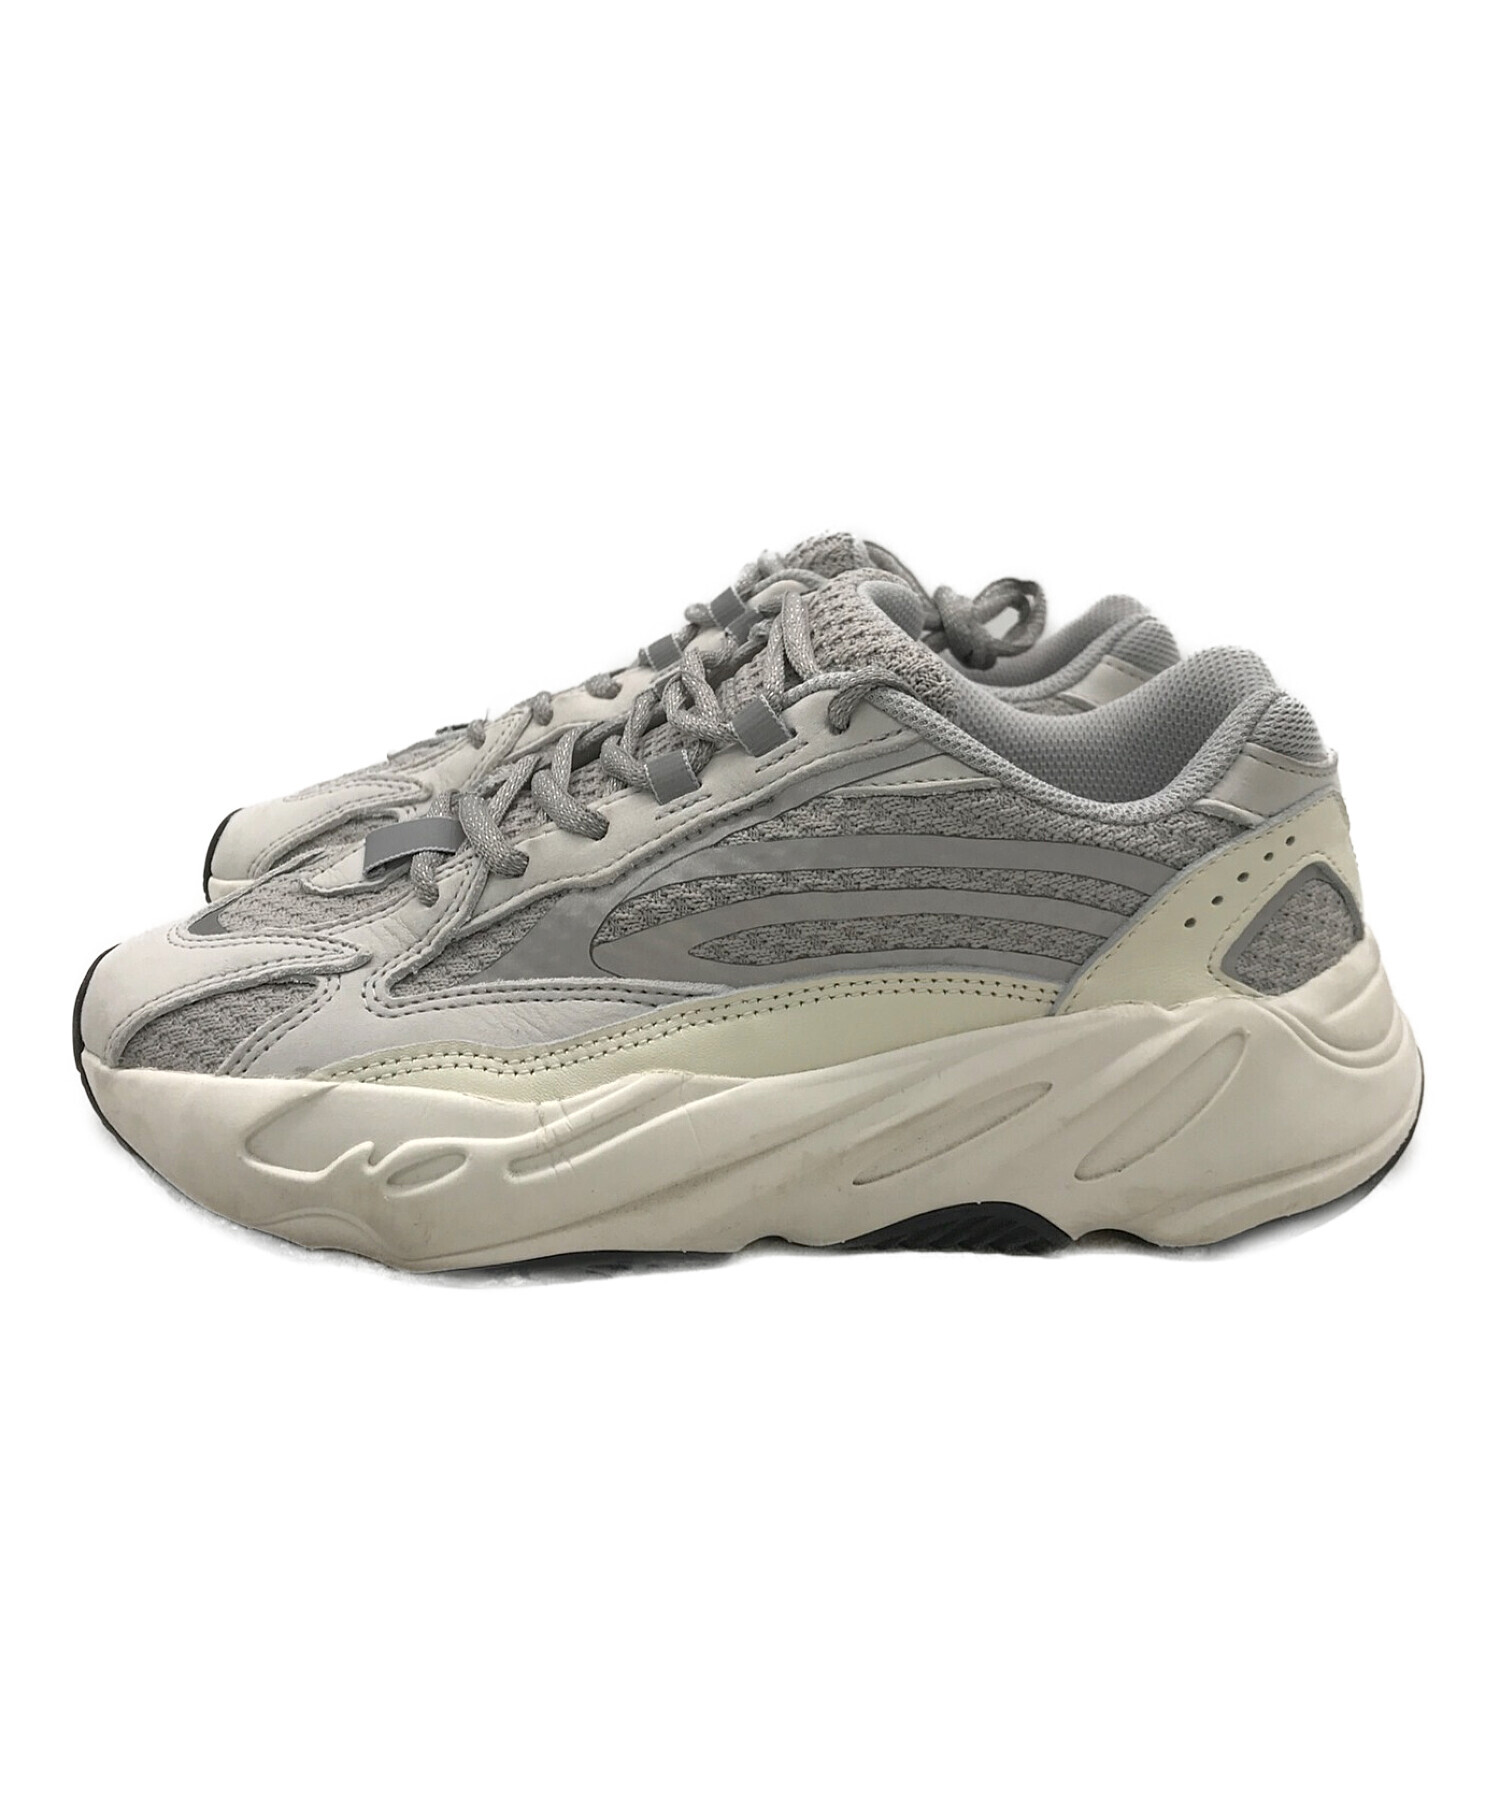 adidas (アディダス) YEEZY BOOST 700 グレー×ホワイト サイズ:24.5㎝